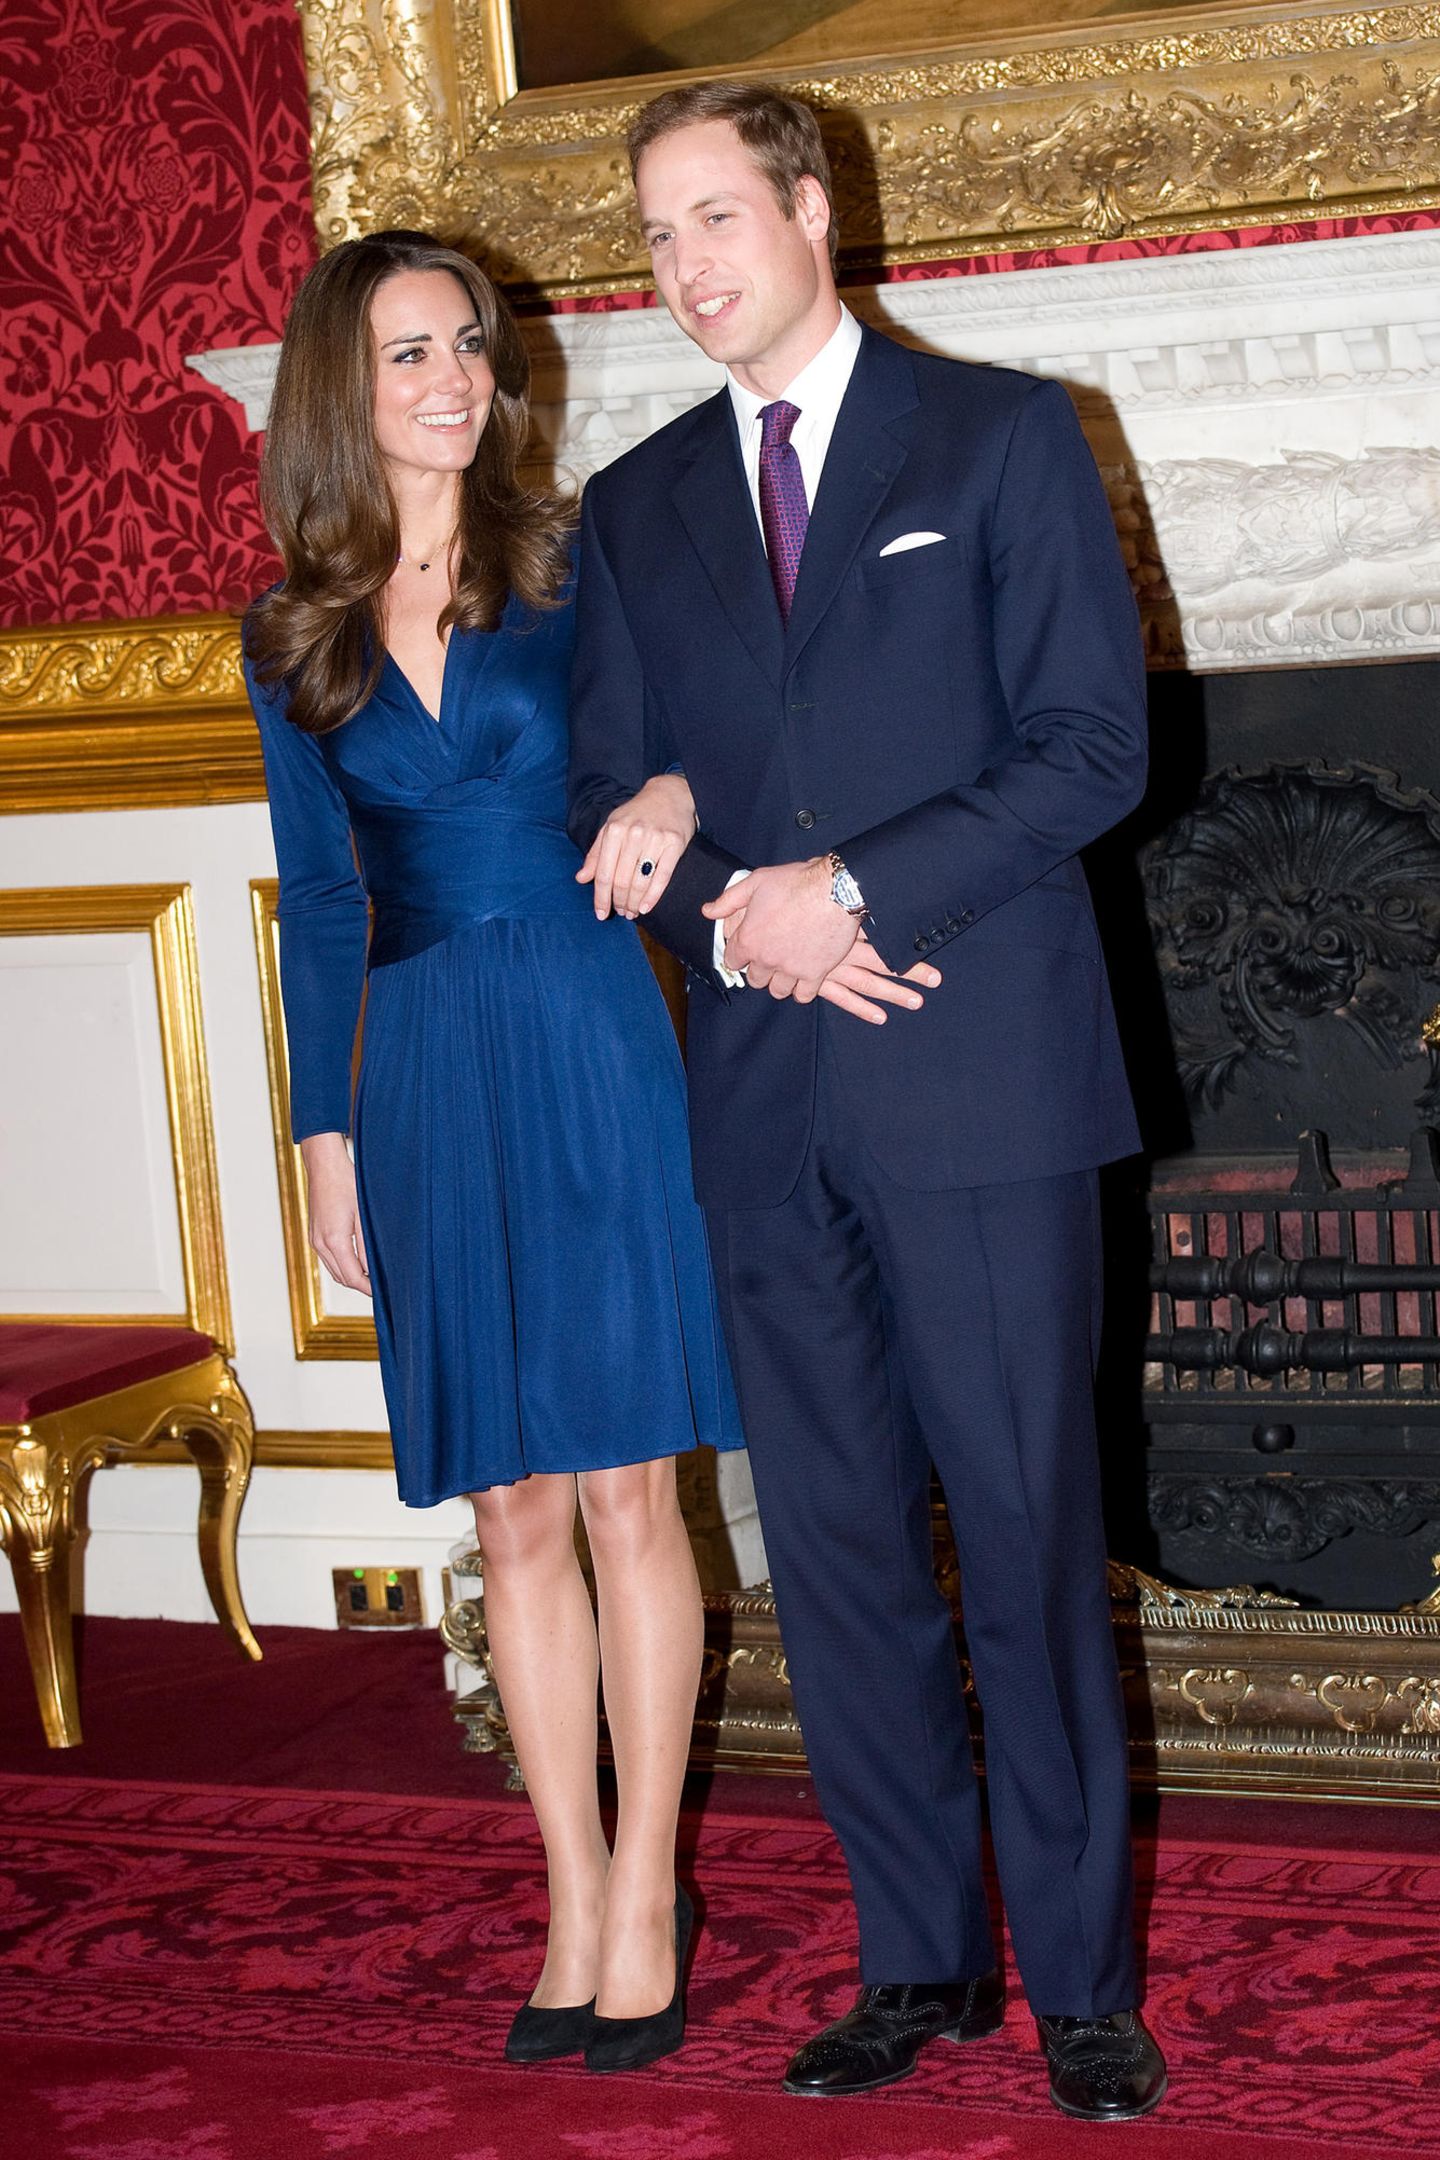 Modische Harmonie und strahlende Gesichter! Passend zu ihrem berühmten Verlobungsring mit großem Saphir strahlte Kate Middleton bei Bekanntgabe ihrer Verlobung am 16. November 2010 in diesem blauen Dress von Issa, das binnen kürzester Zeit vergriffen war – der sogenannte "Kate-Effekt" entstand. Auch Prinz William entschied sich für einen blauen Anzug.